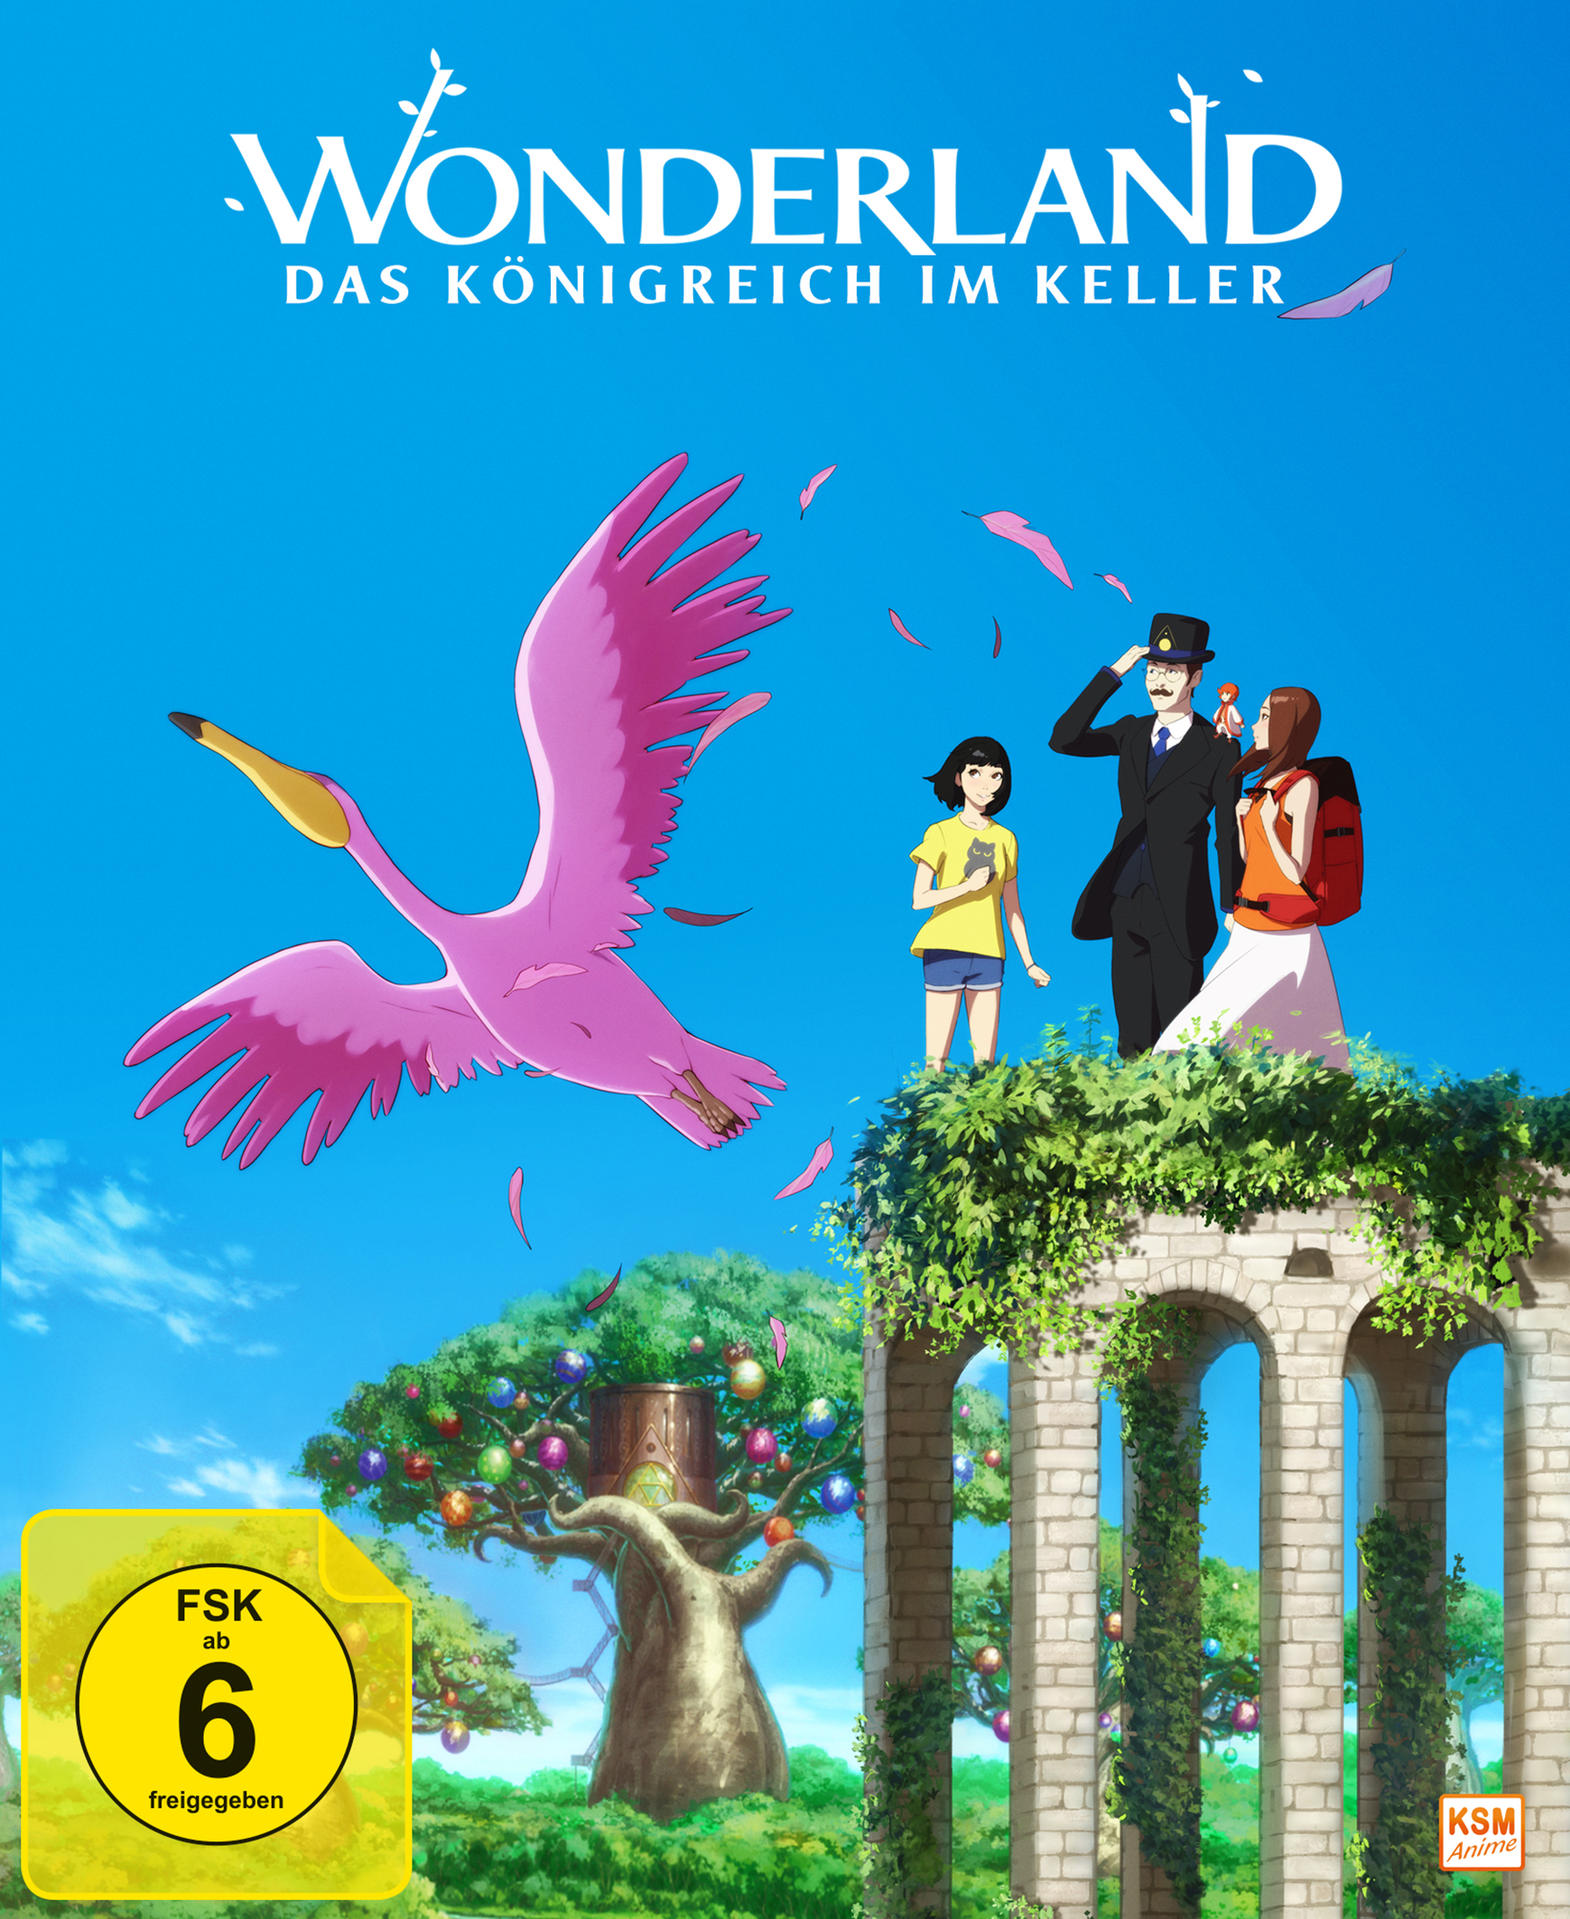 Wonderland - Das Königreich Blu-ray im Keller